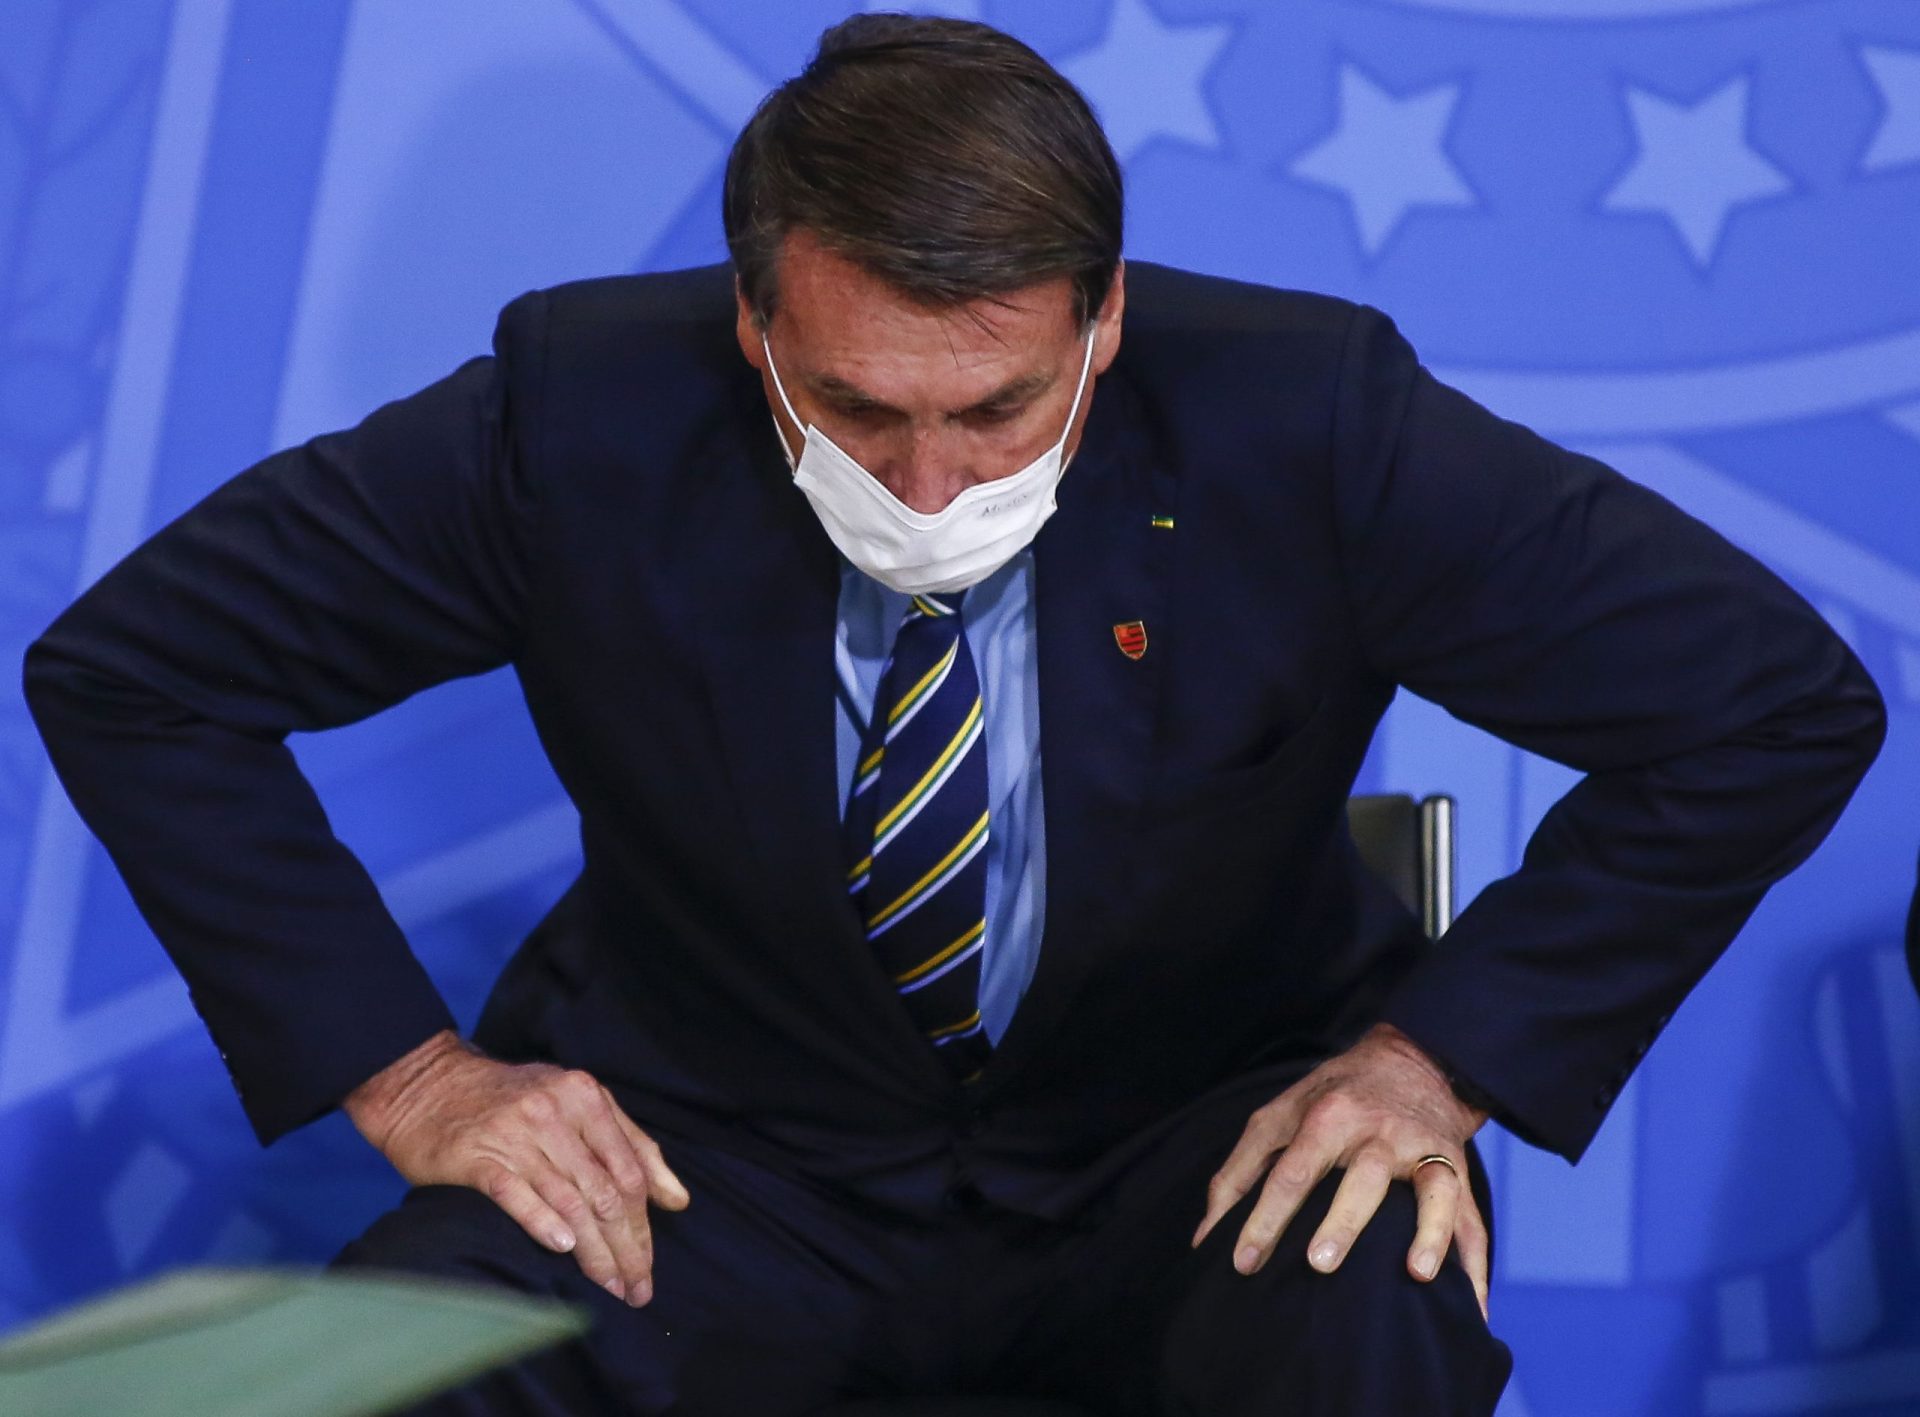 Políticos alertam para risco de golpe no Brasil